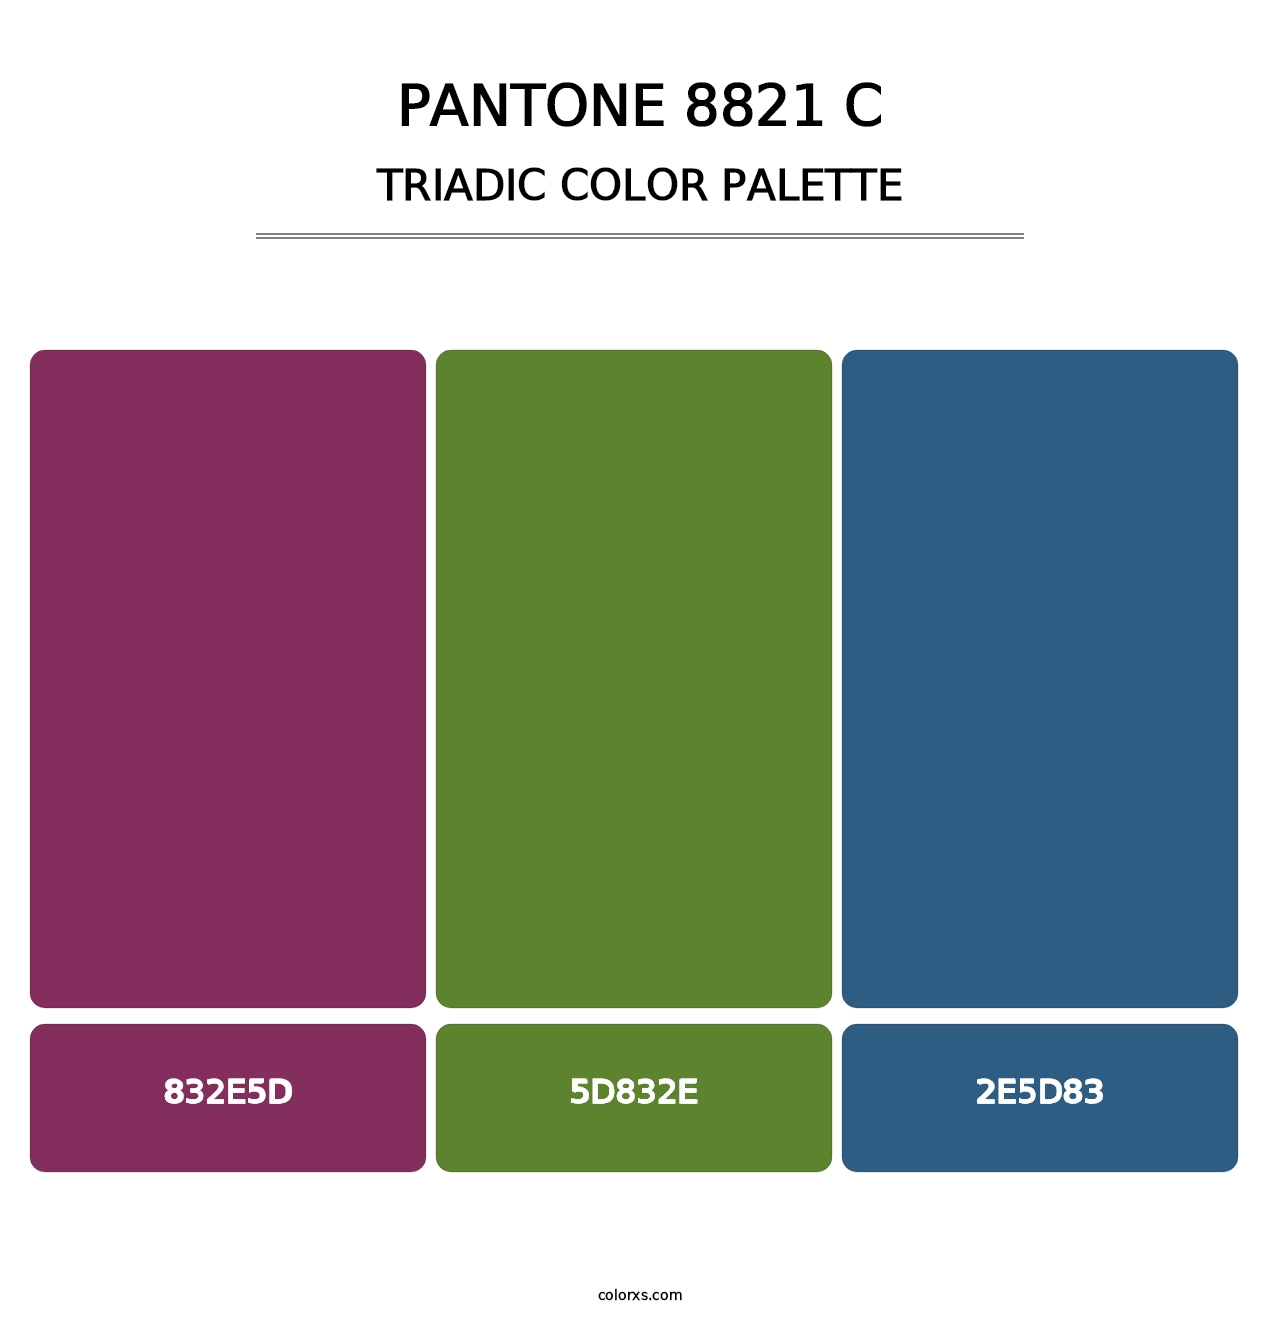 PANTONE 8821 C - Triadic Color Palette